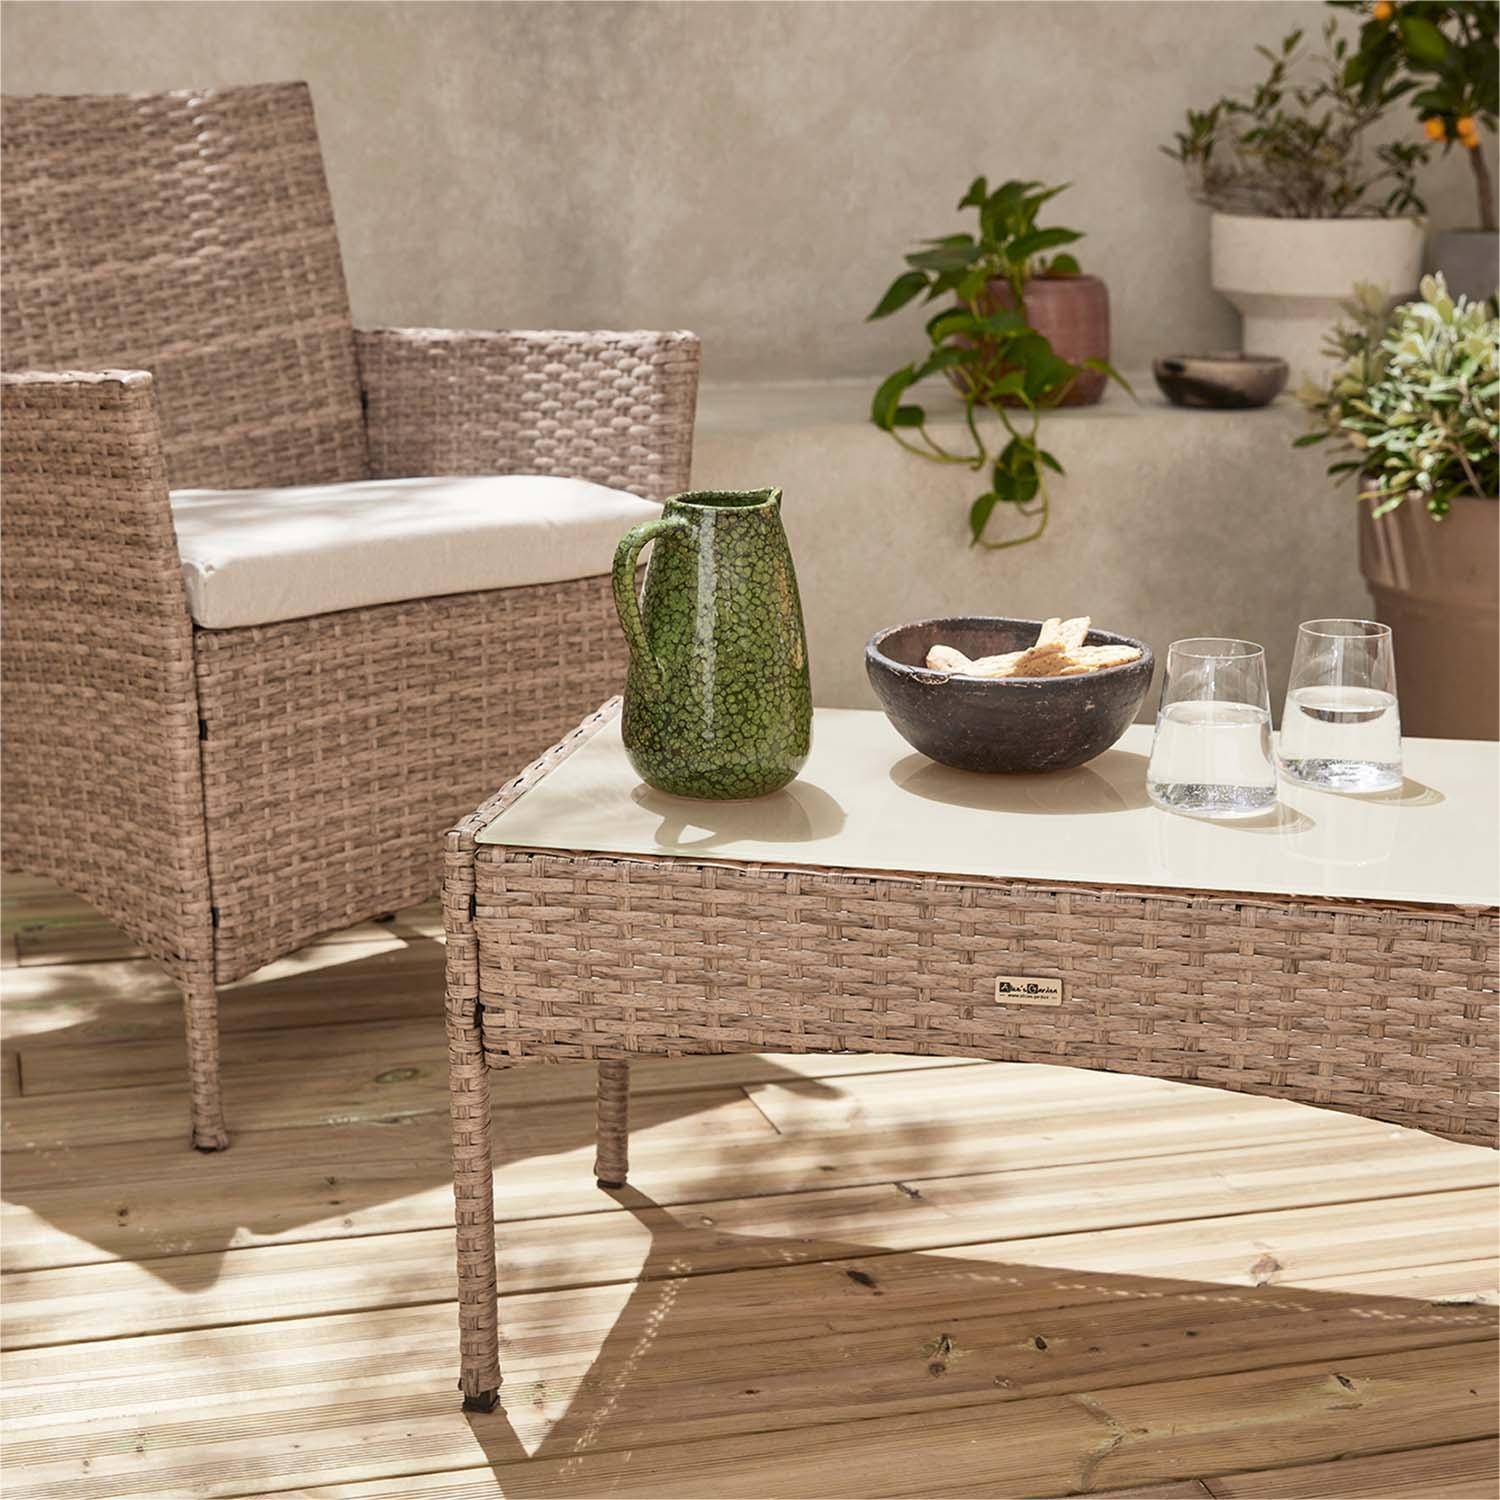 Conjunto de muebles de jardín de resina trenzada - Moltès - Natural, cojines beige - 4 plazas - 1 sofá, 2 sillones, una mesa de centro Photo2